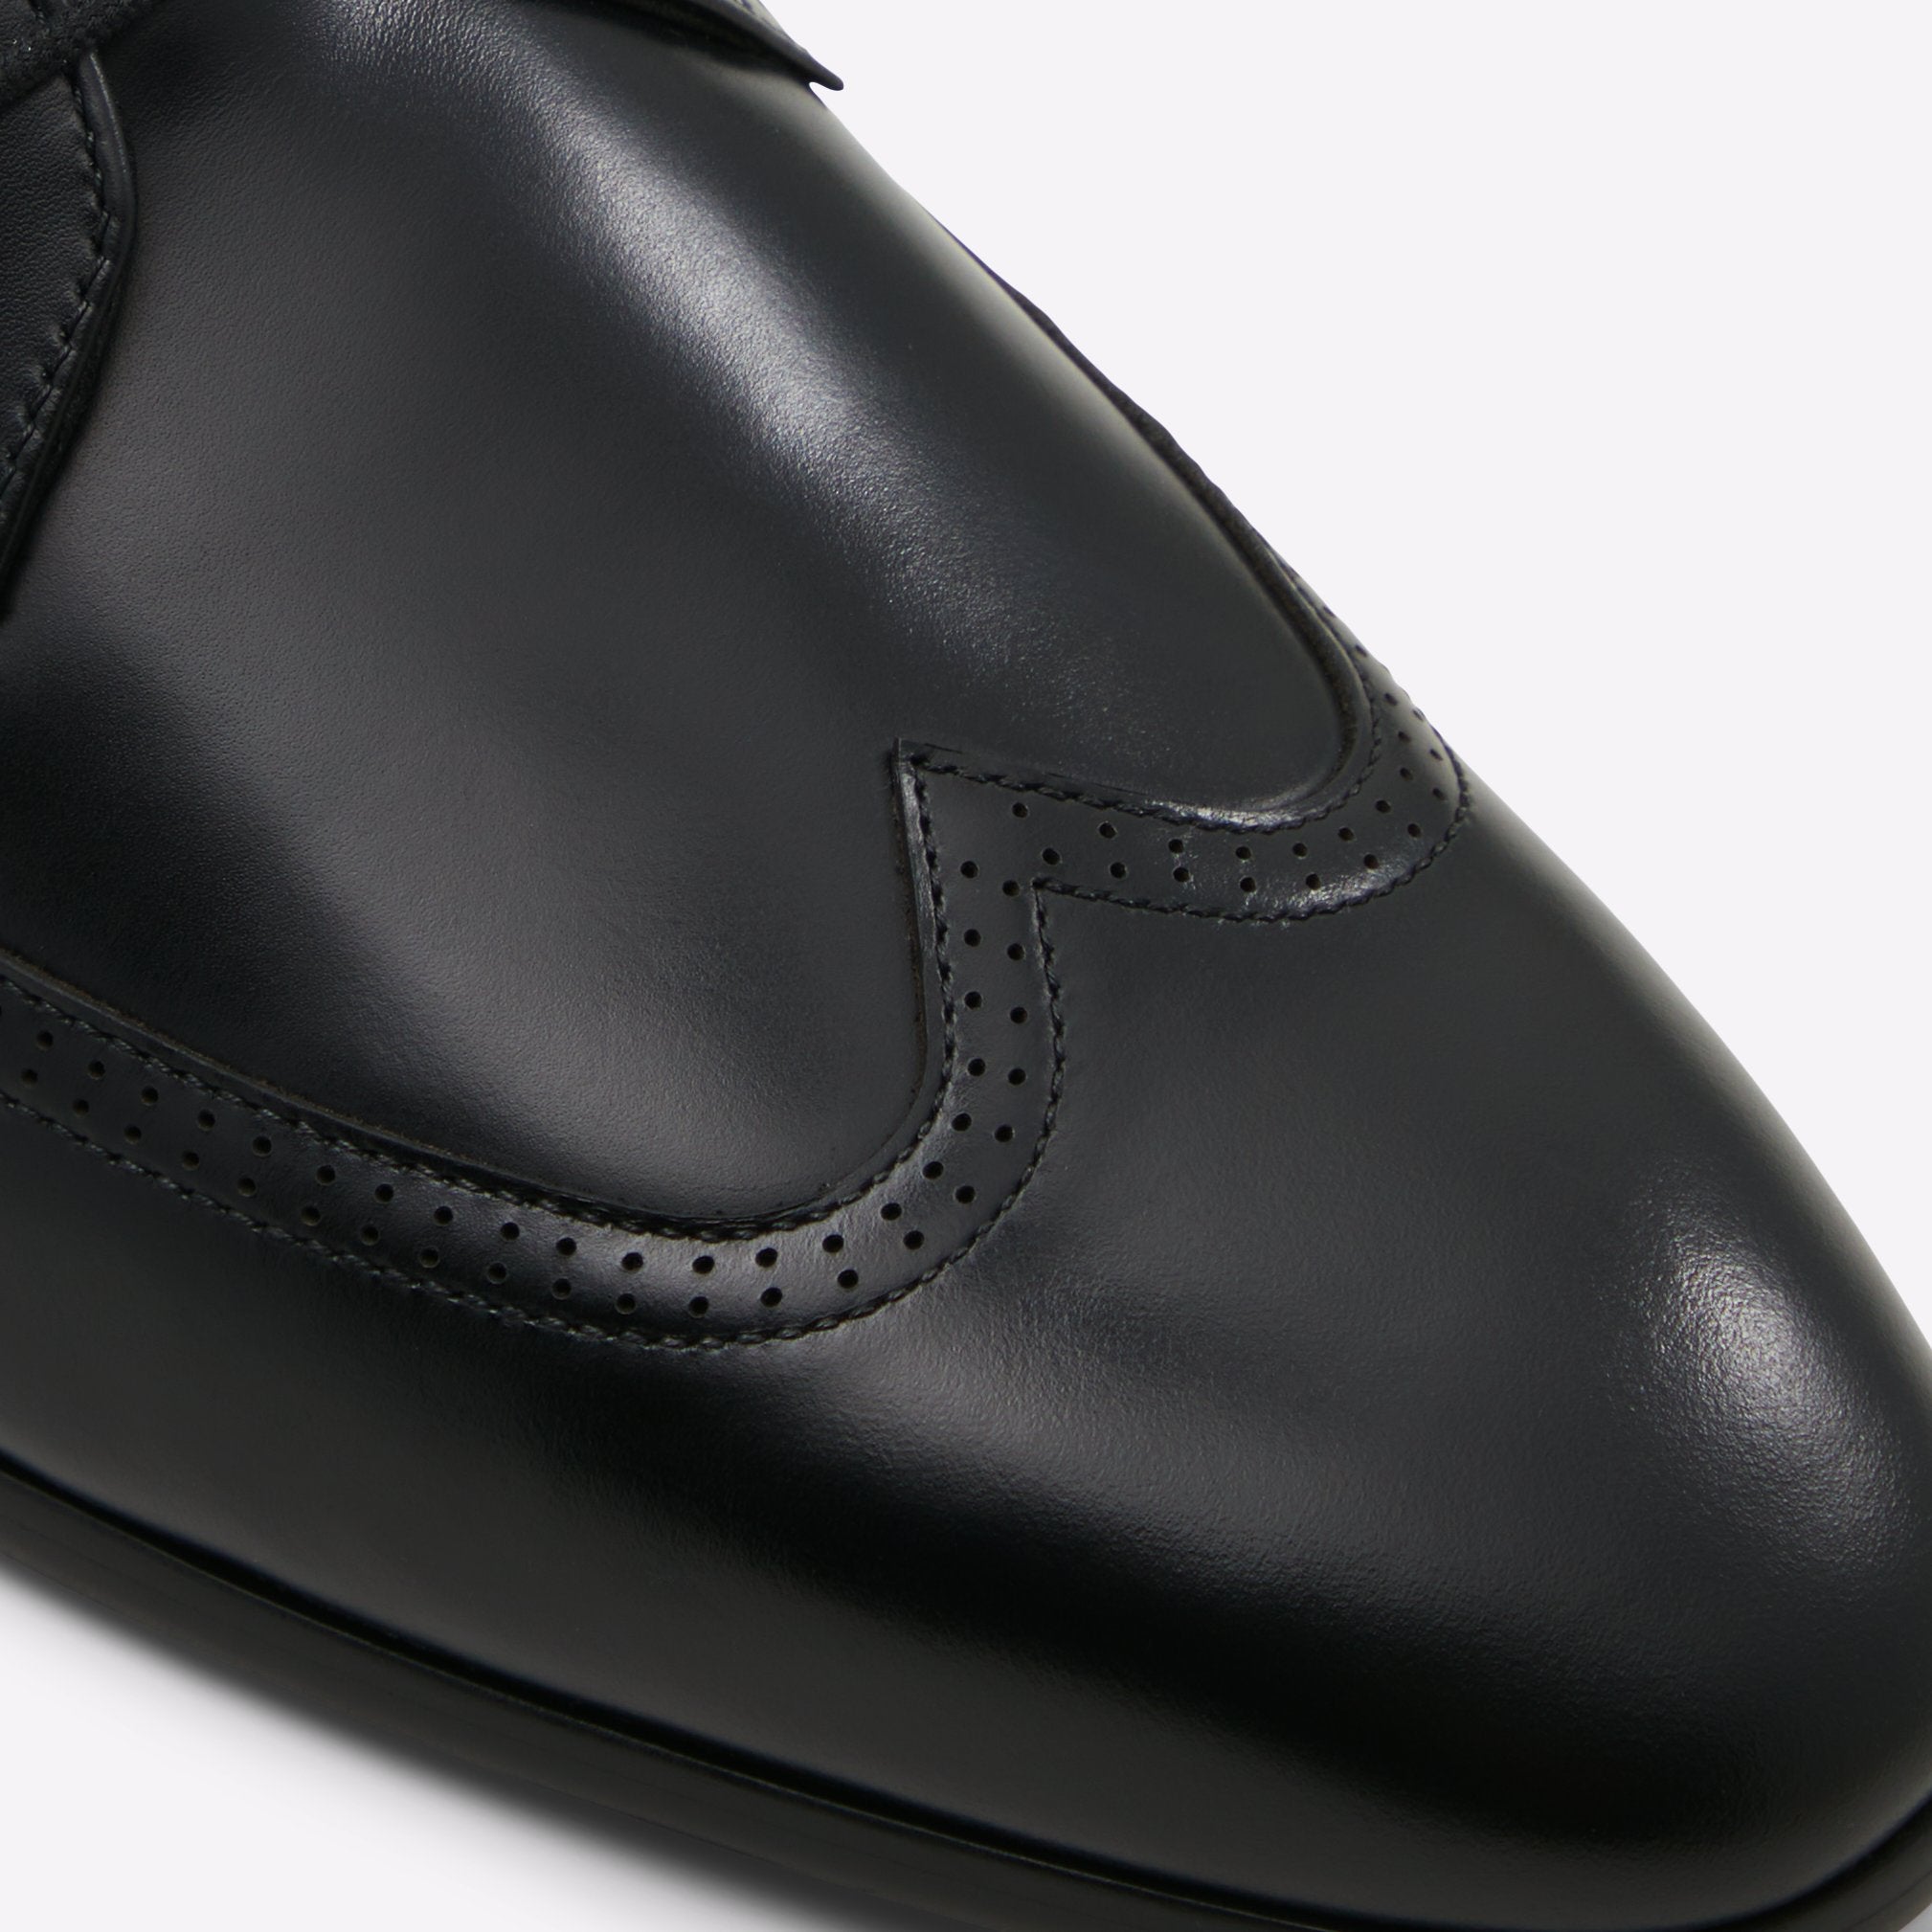 Dumond Men Shoes - Black - ALDO KSA